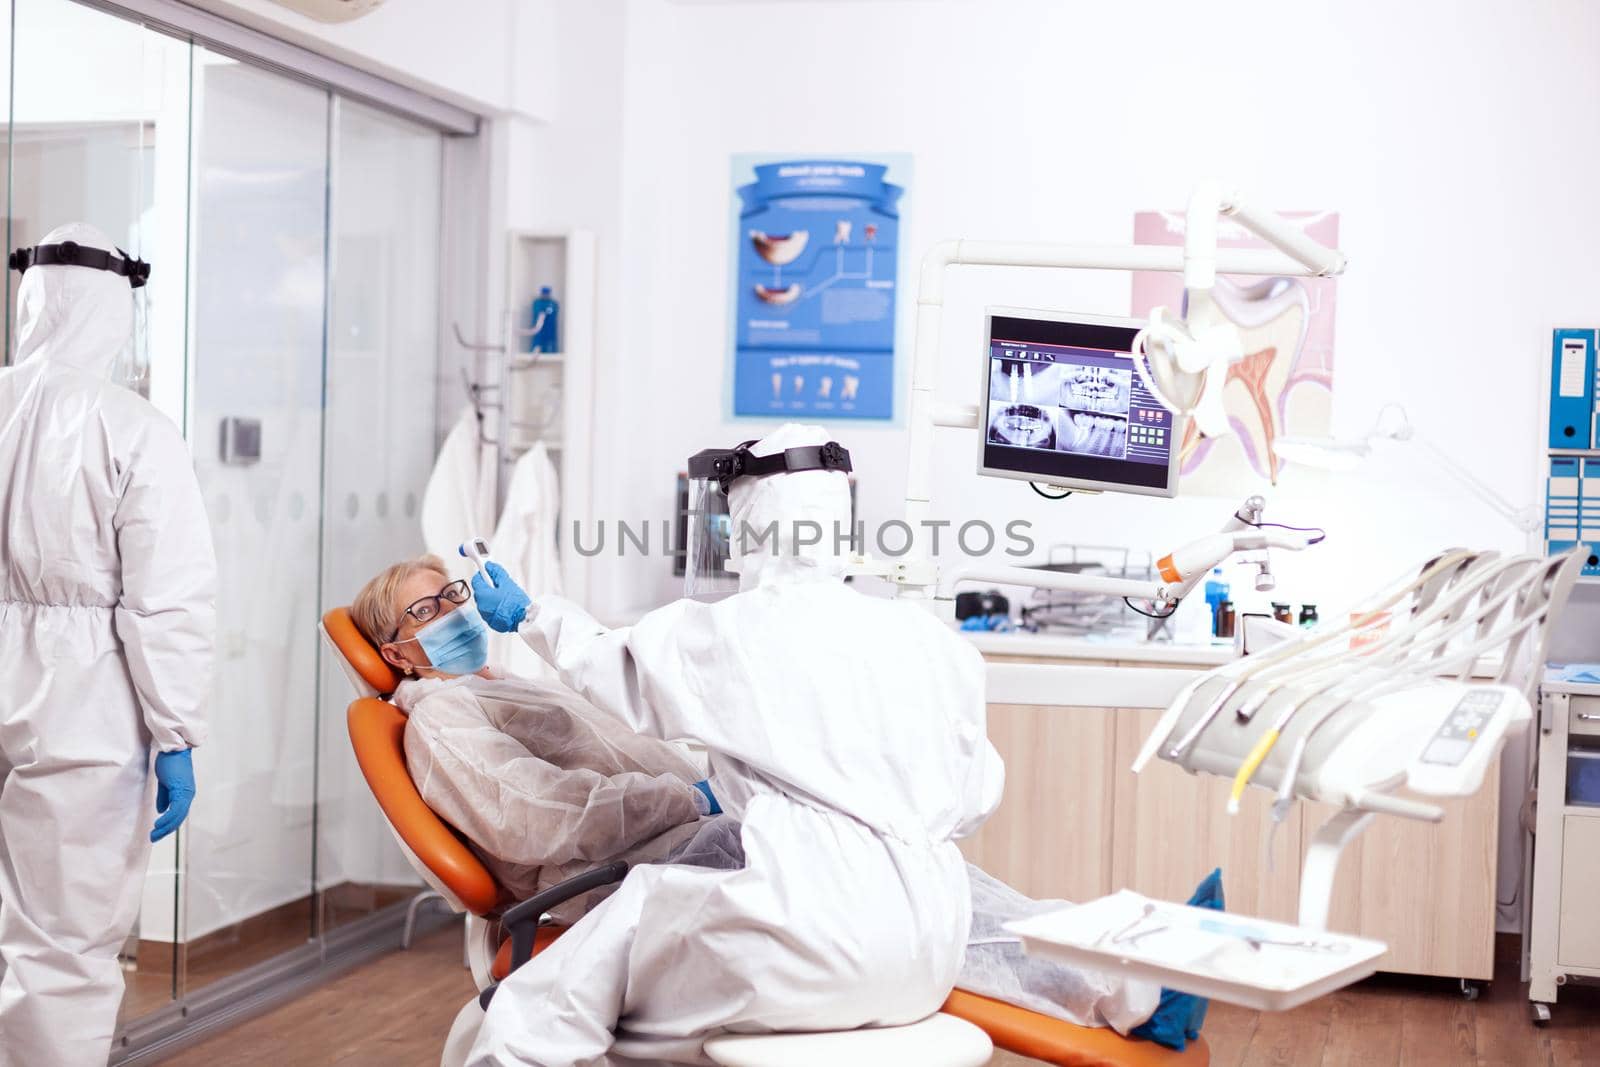 Dentist nurse taking patient temperature wearing hazmat suit by DCStudio